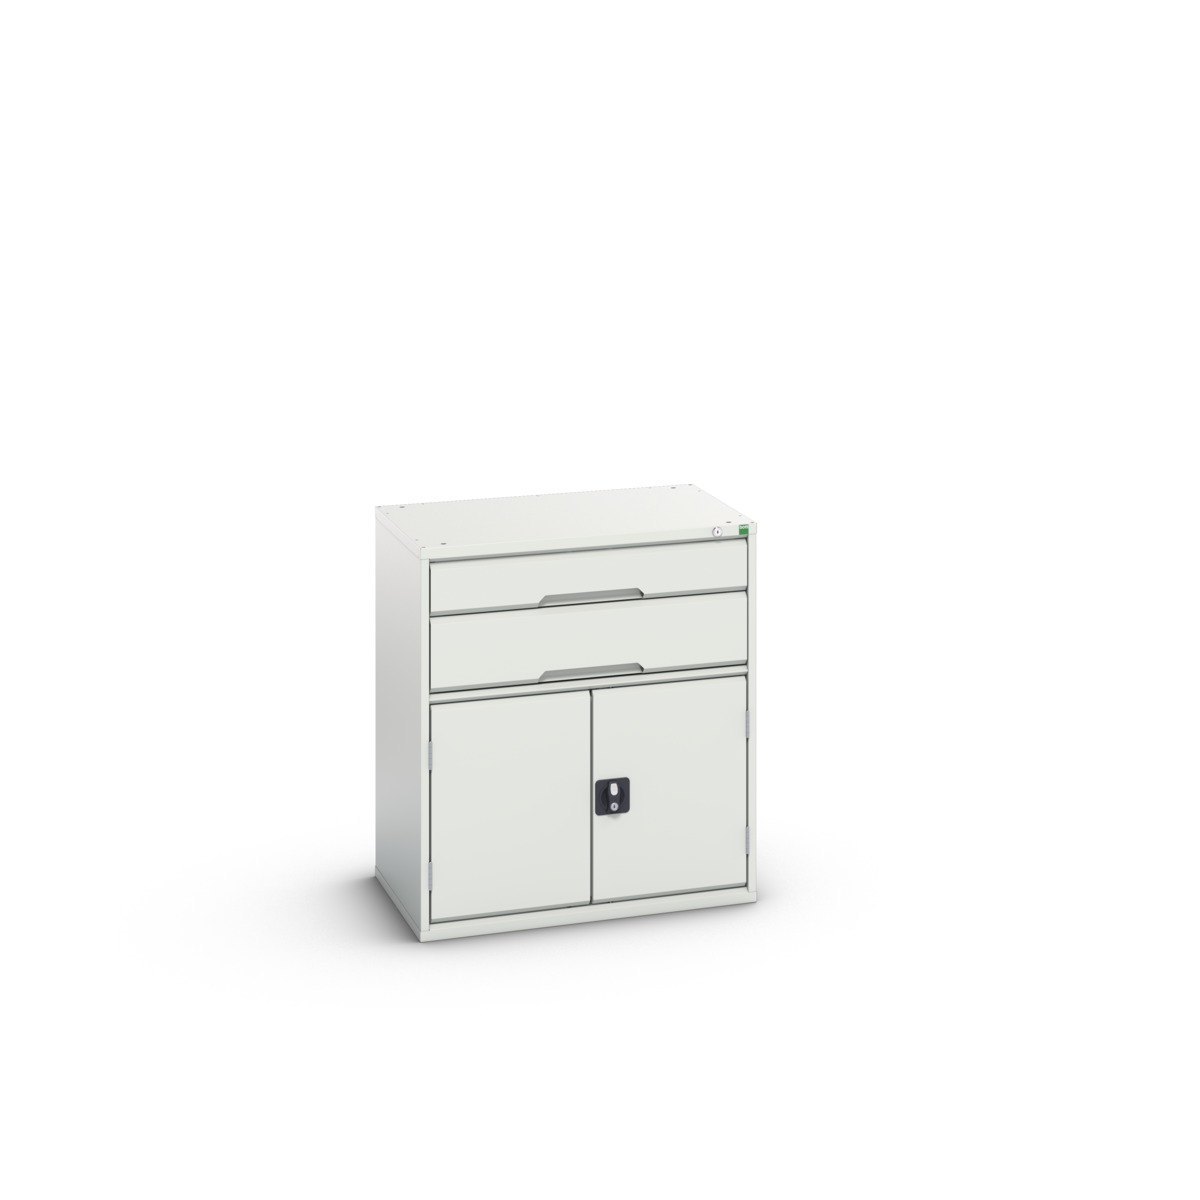 16925437.16 - verso drawer-door cabinet